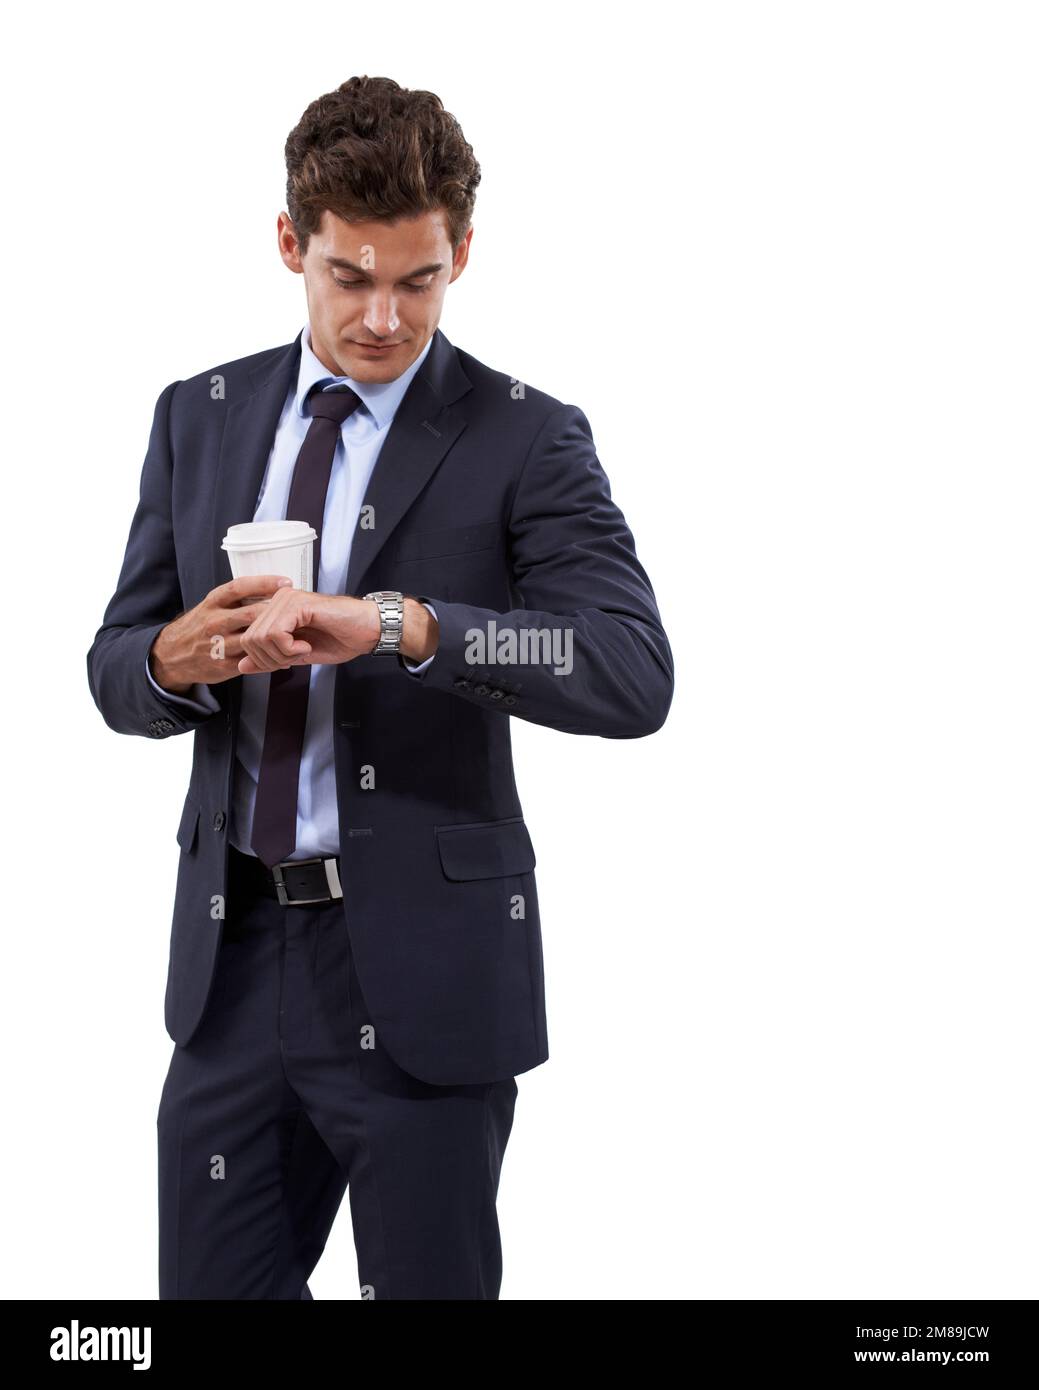 Gerade rechtzeitig für das Treffen. Ein gutaussehender junger Geschäftsmann, der auf seine Uhr schaut, während er eine Tasse Kaffee hält. Stockfoto